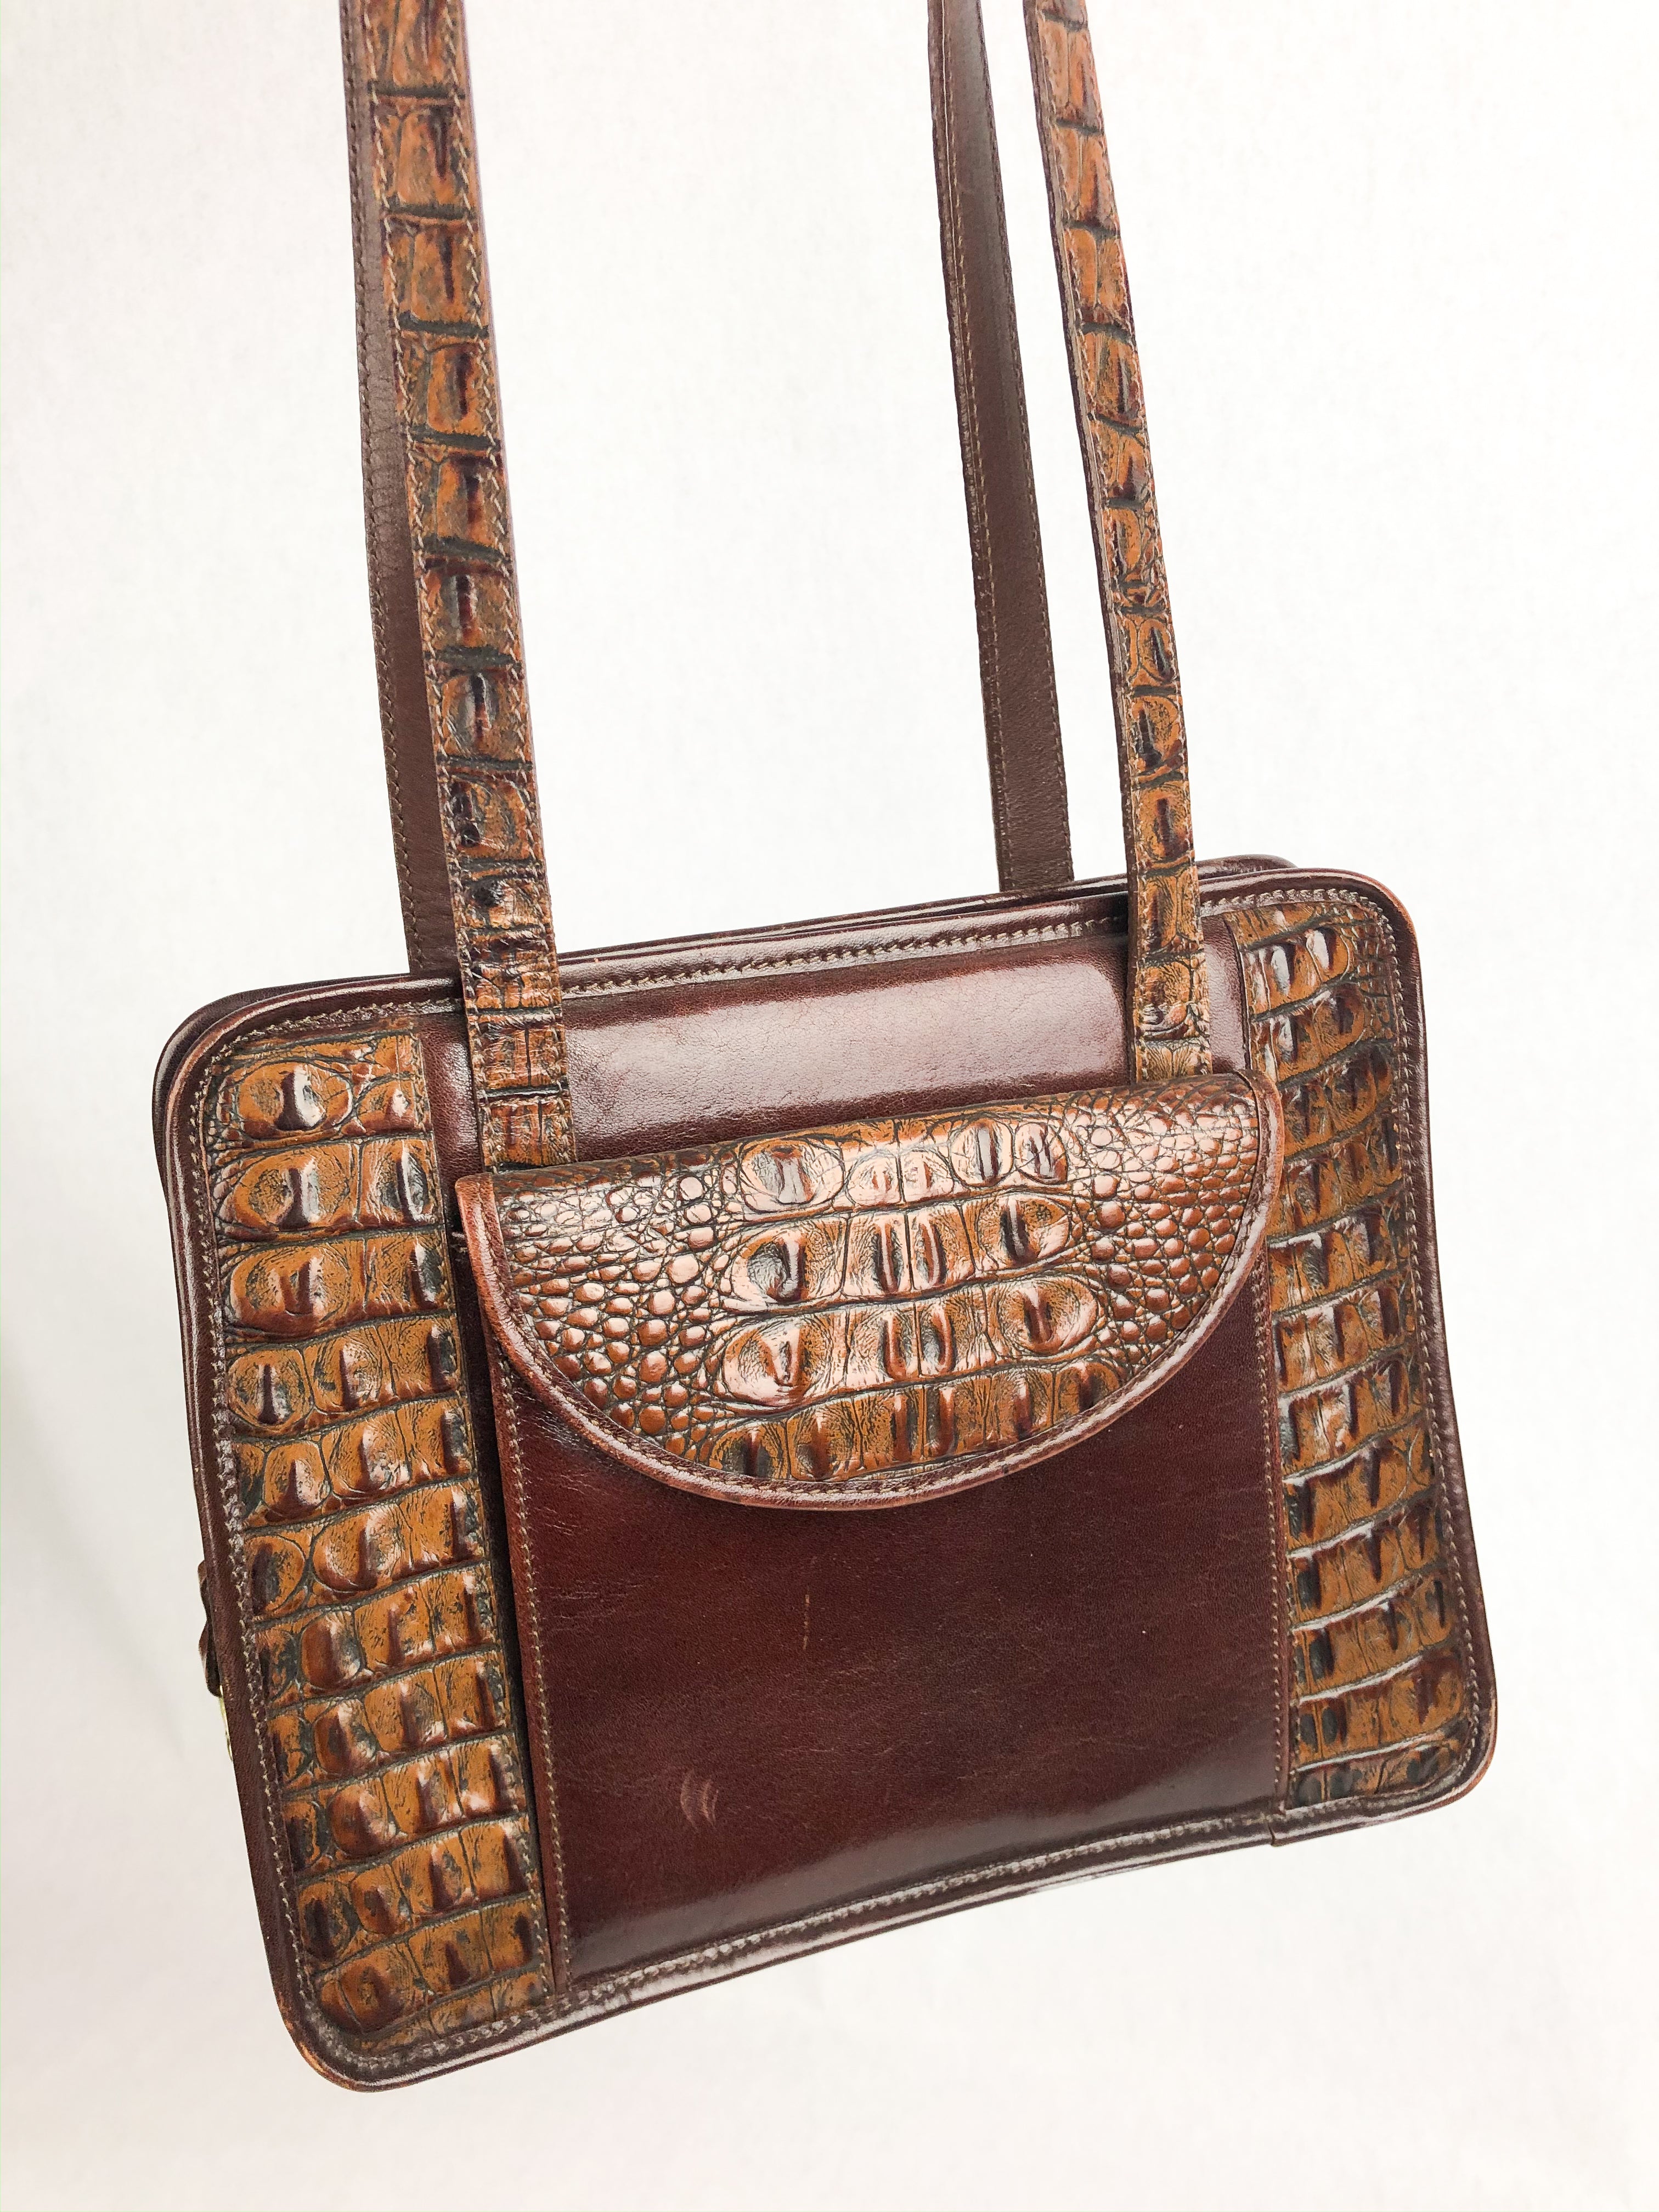 Buy Brahmin Purse Genuine Leather Shoulder Bag Brown Leather Bag Vintage Brahmin  Alligator Crocodile Handbag Rare Find Near Mint Condition Gift Online in  India - Etsy